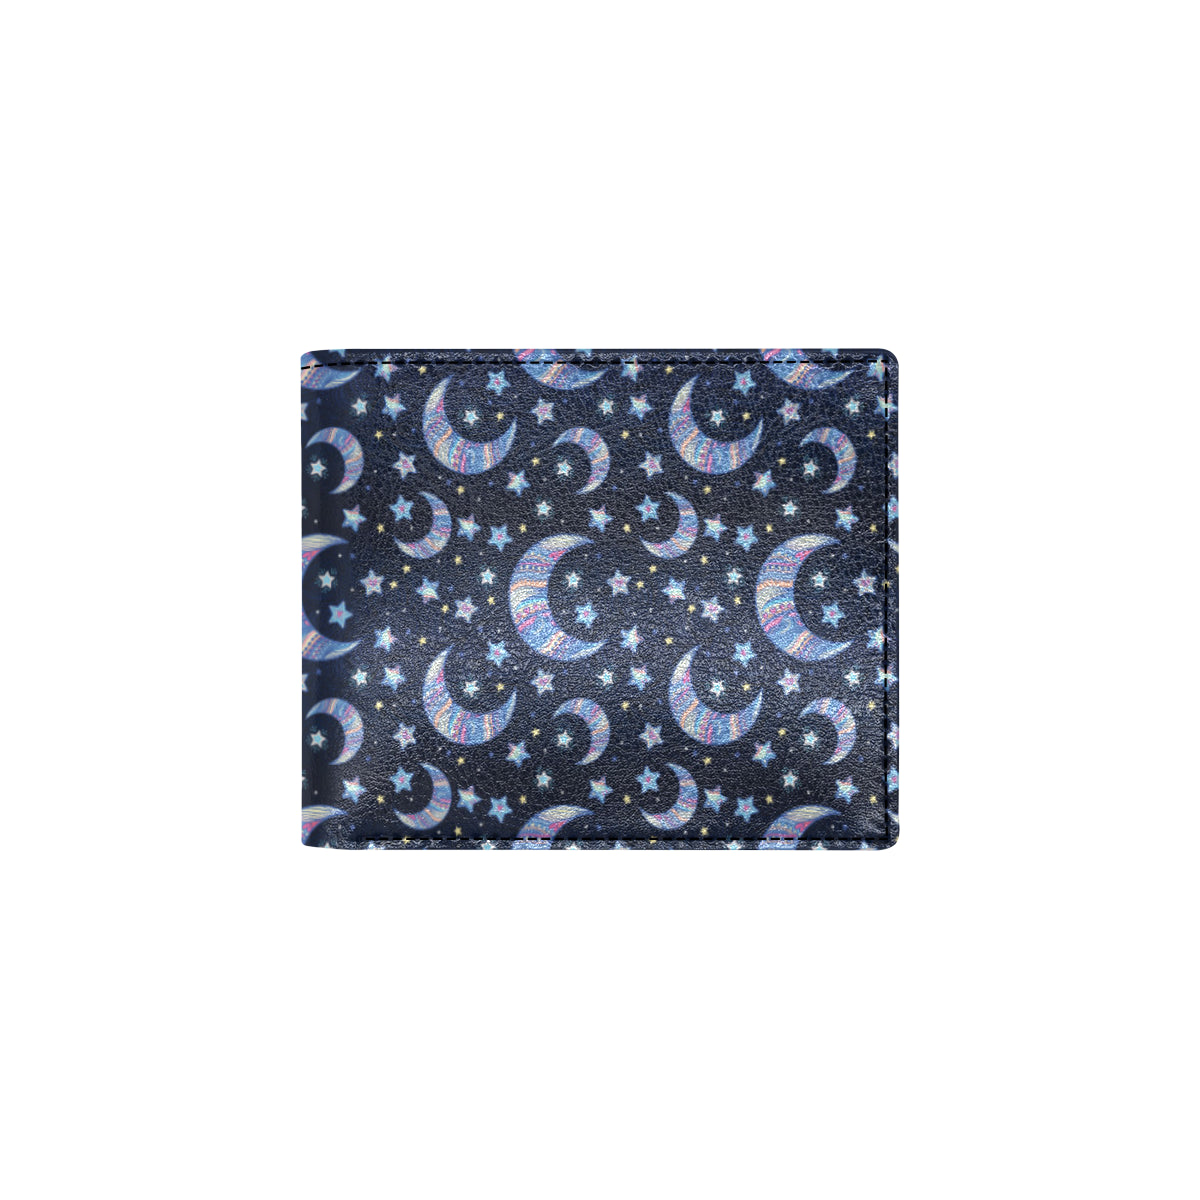 Celestial Moon Pattern Print Design 03 Men's ID Card Wallet